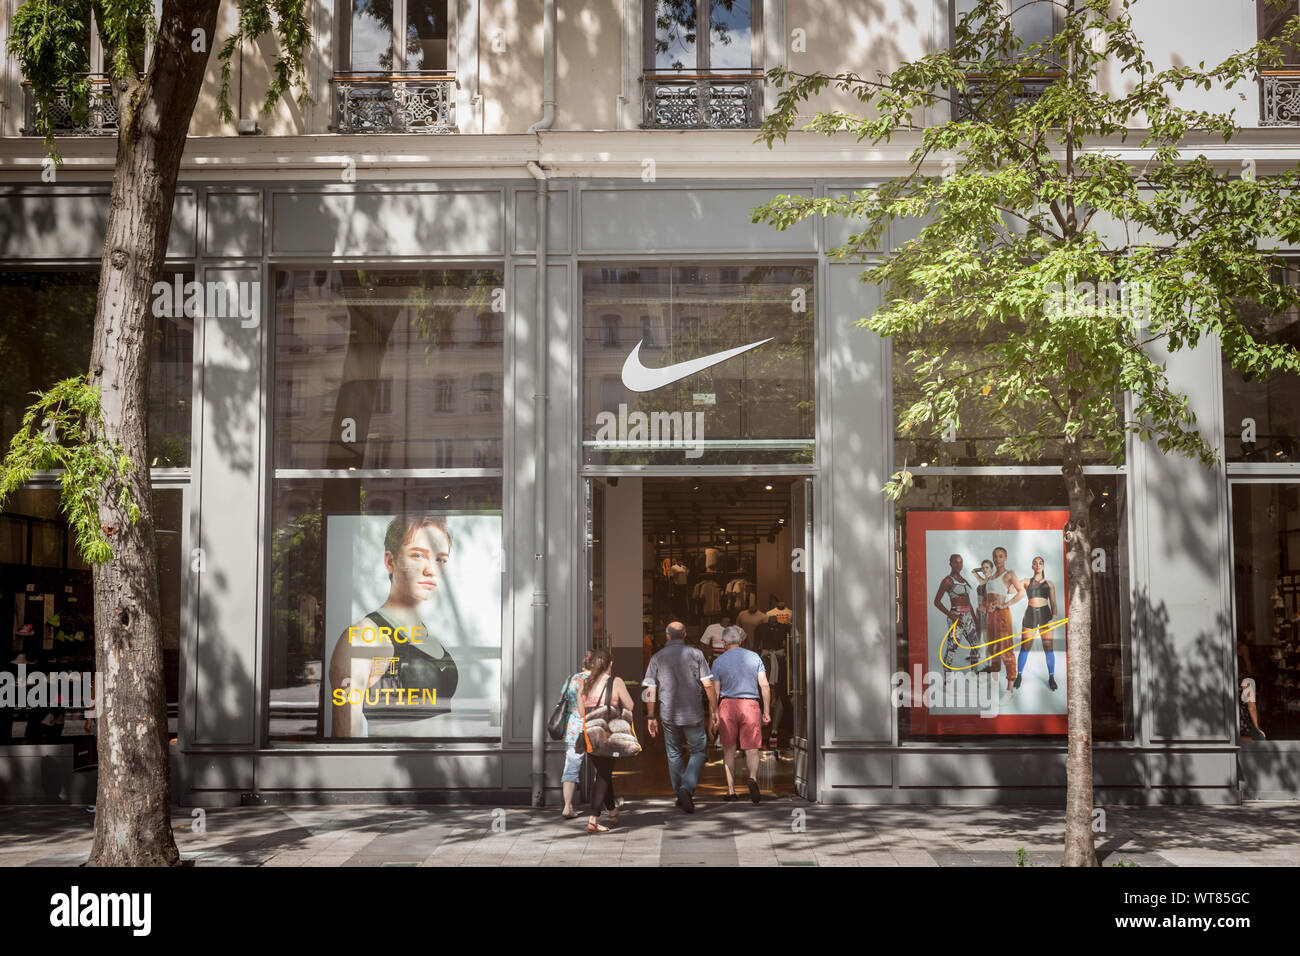 LYON, FRANCE - 13 juillet 2019 : logo Nike sur leur magasin principal de Lyon. Nike est une marque américaine de vêtements de sport et chaussures célèbre pour ses athleti Banque D'Images